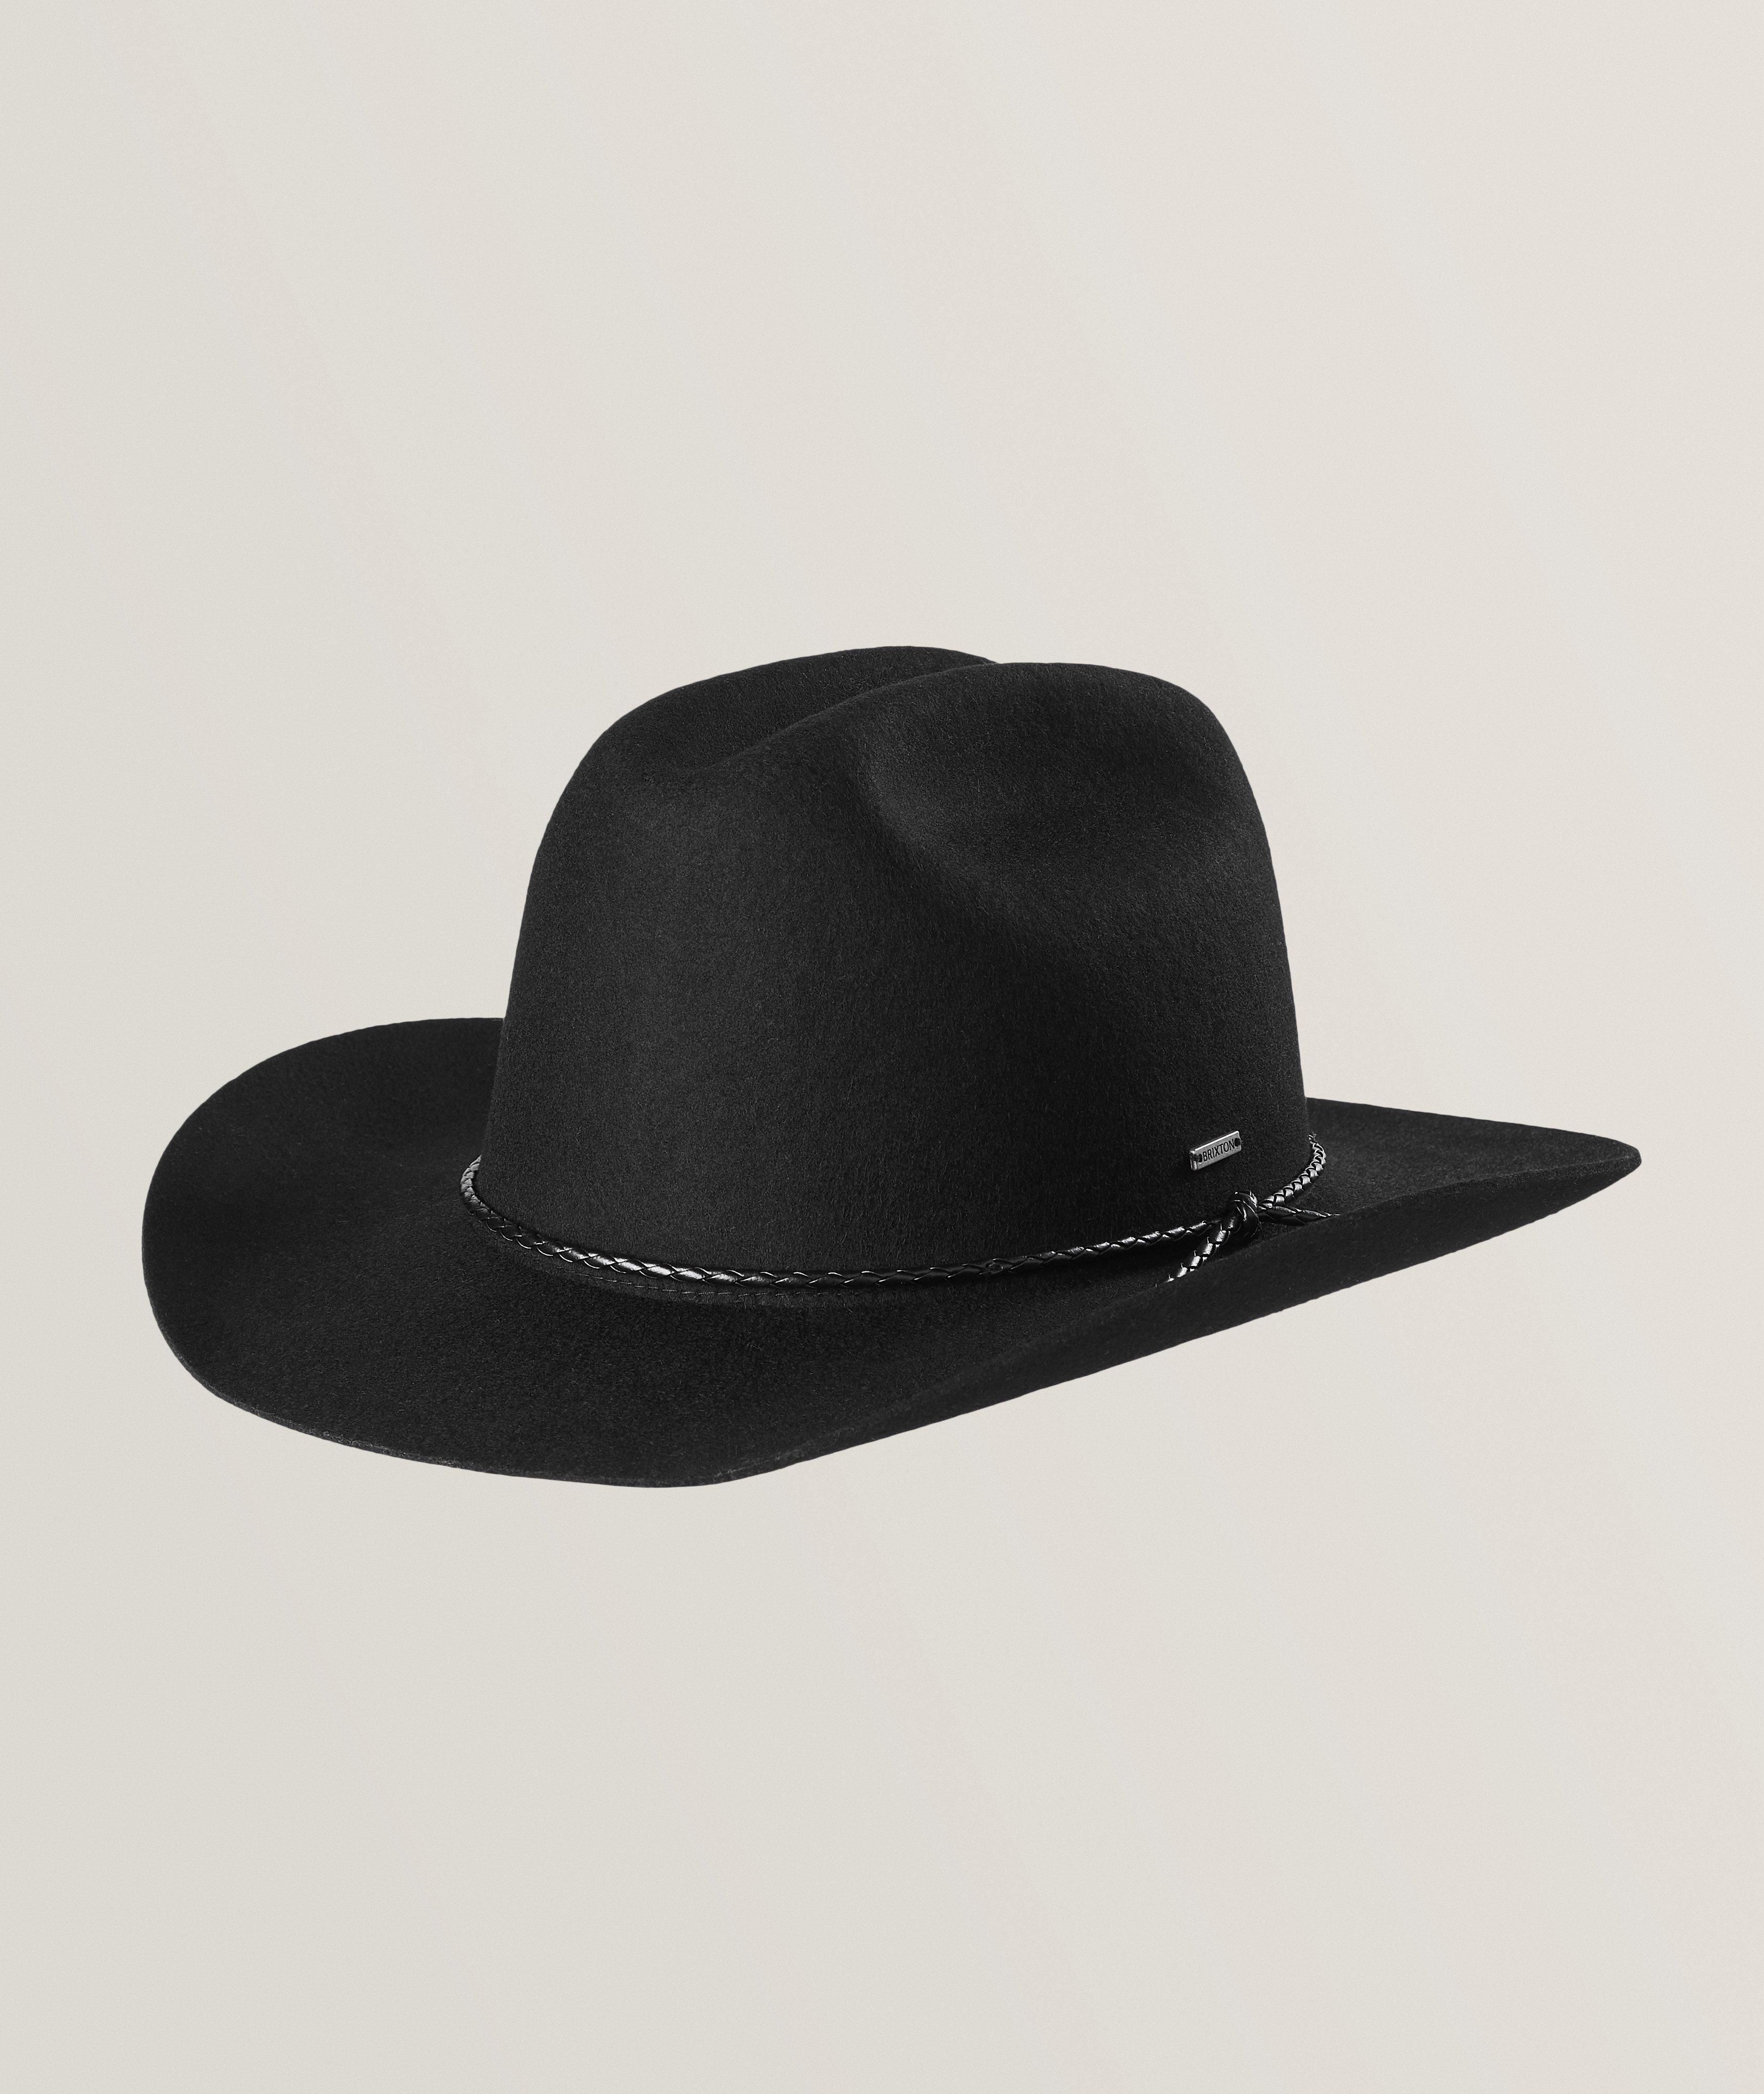 Range Wool Cowboy Hat  image 0